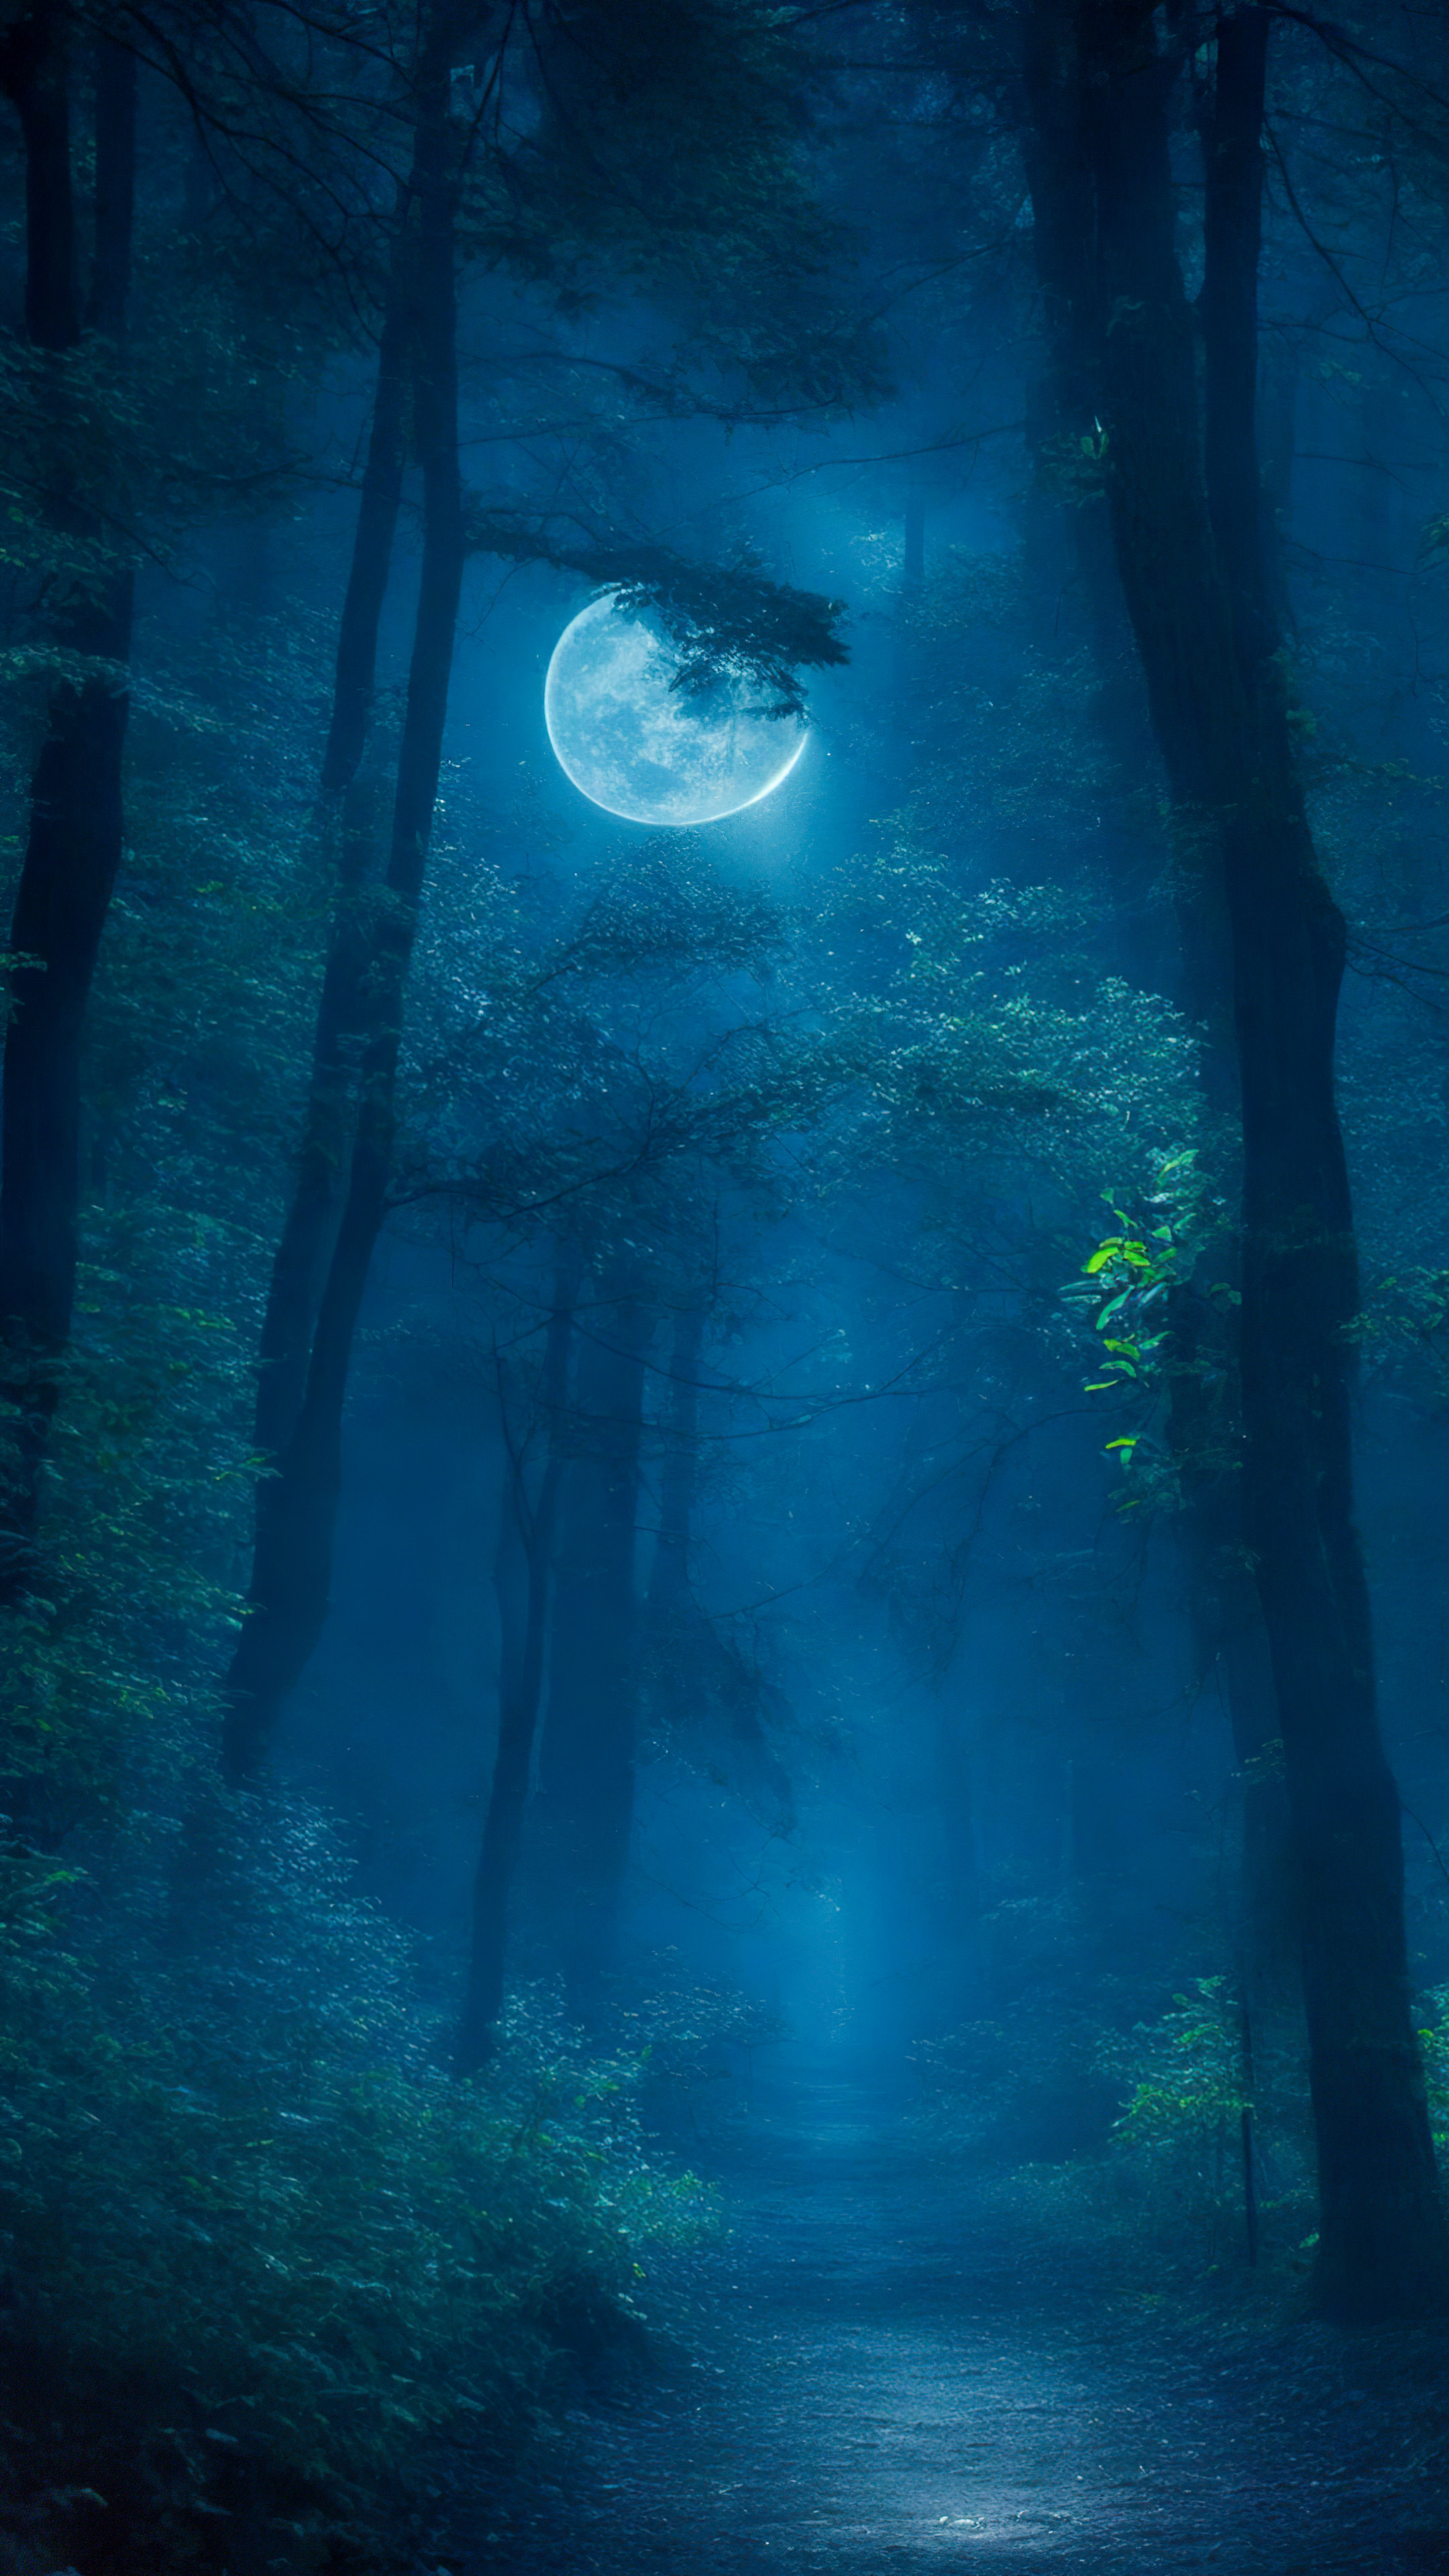 Vivez le mystère avec notre meilleur fond d'écran de paysage, présentant une forêt mystérieuse la nuit, où la lumière de la lune filtre à travers les arbres, créant une atmosphère envoûtante et étrange.